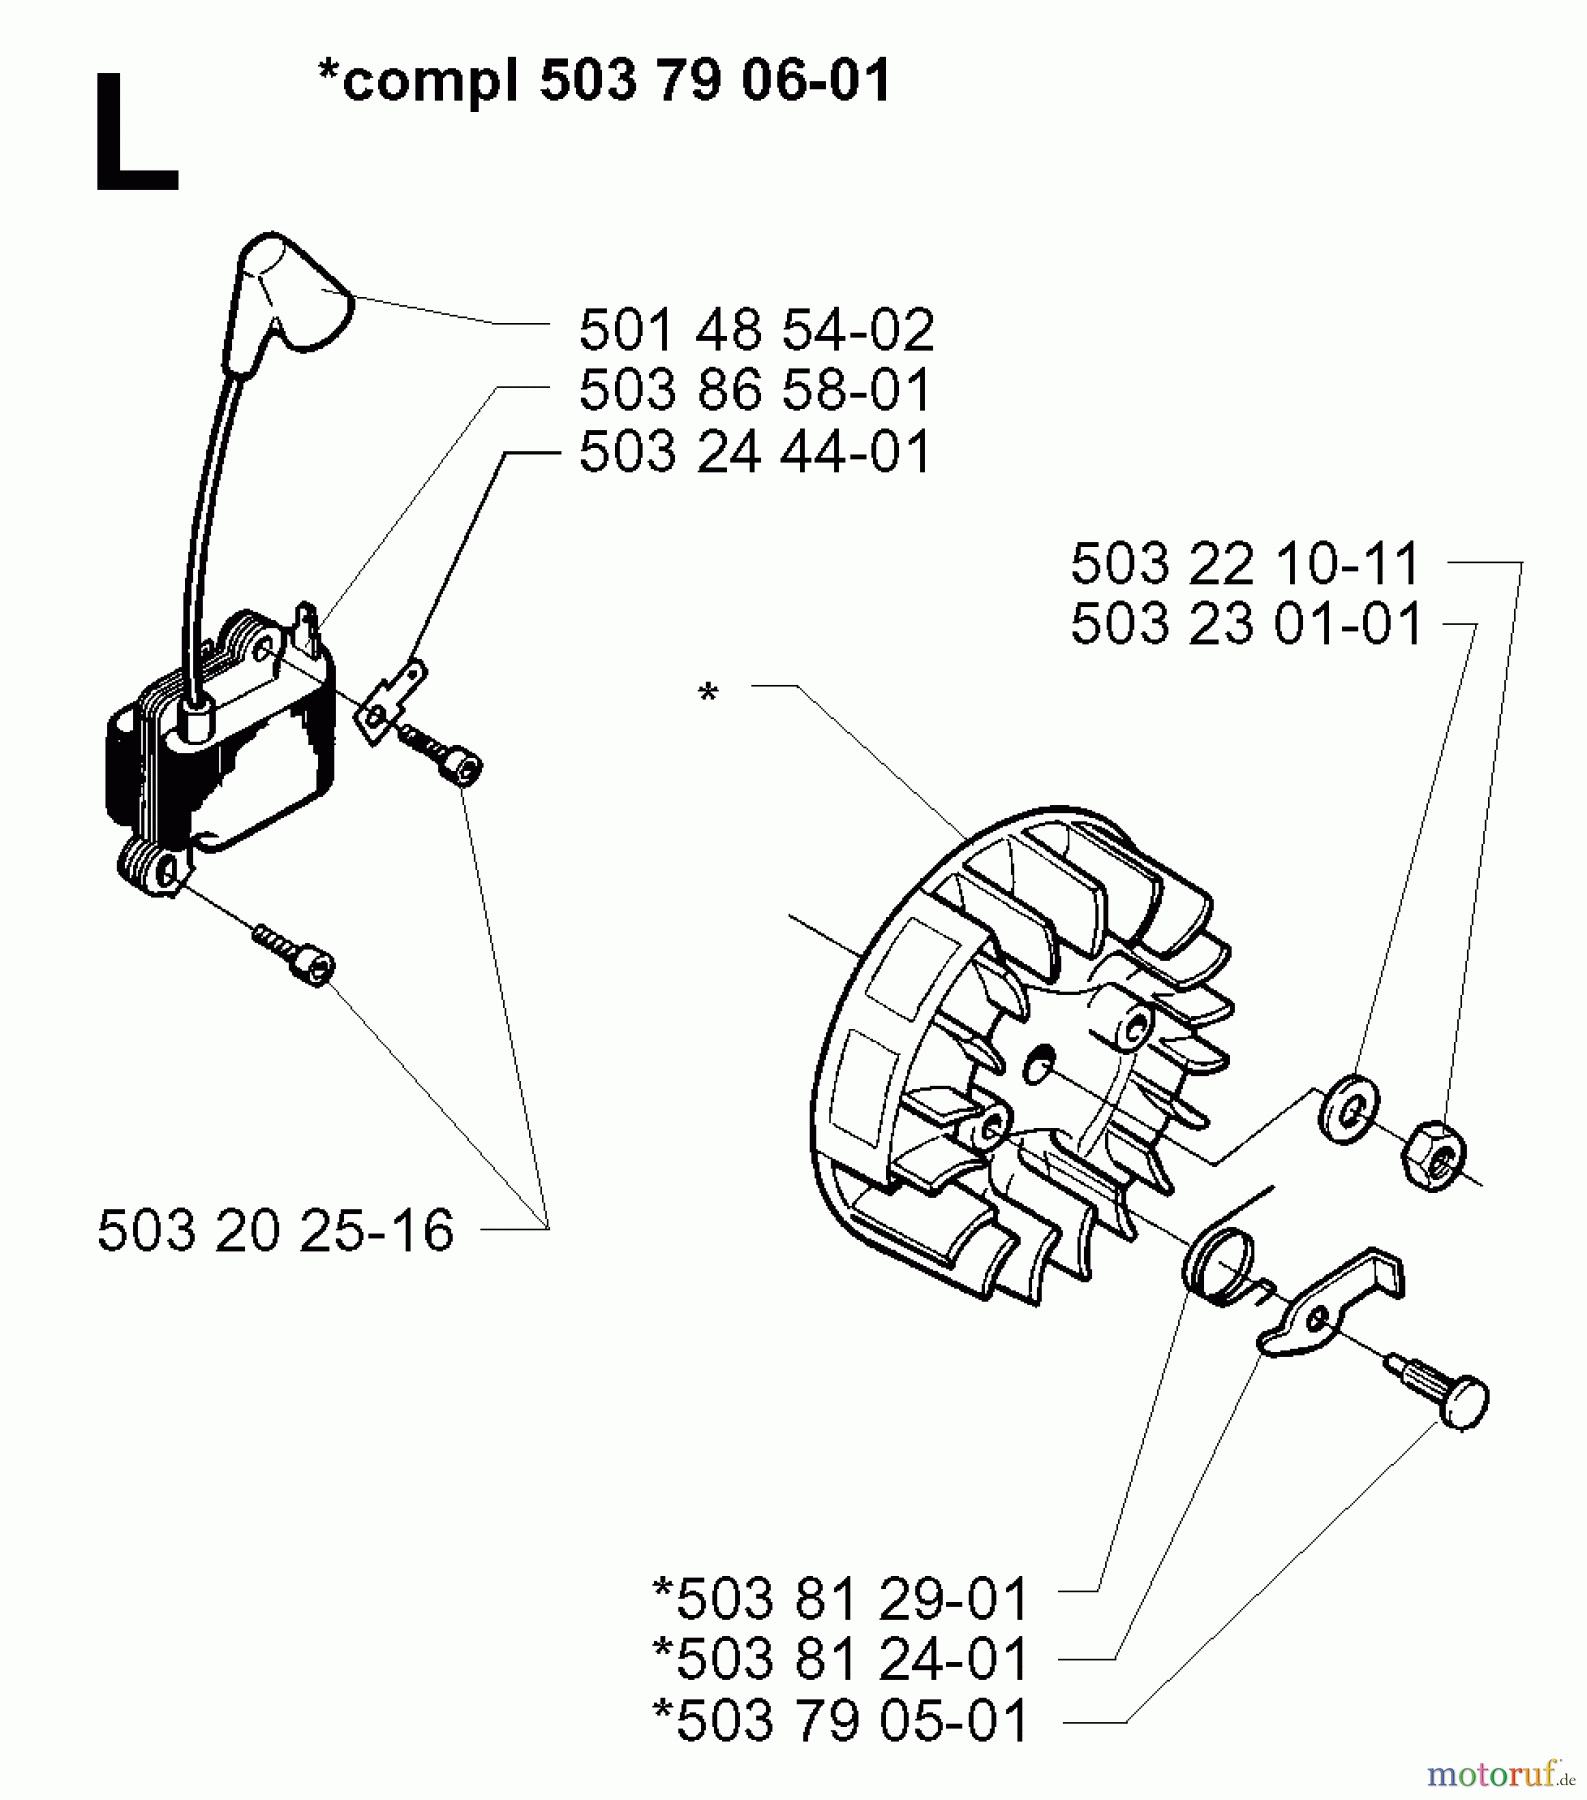  Jonsered Motorsensen, Trimmer GR2036 - Jonsered String/Brush Trimmer (1998-02) IGNITION SYSTEM